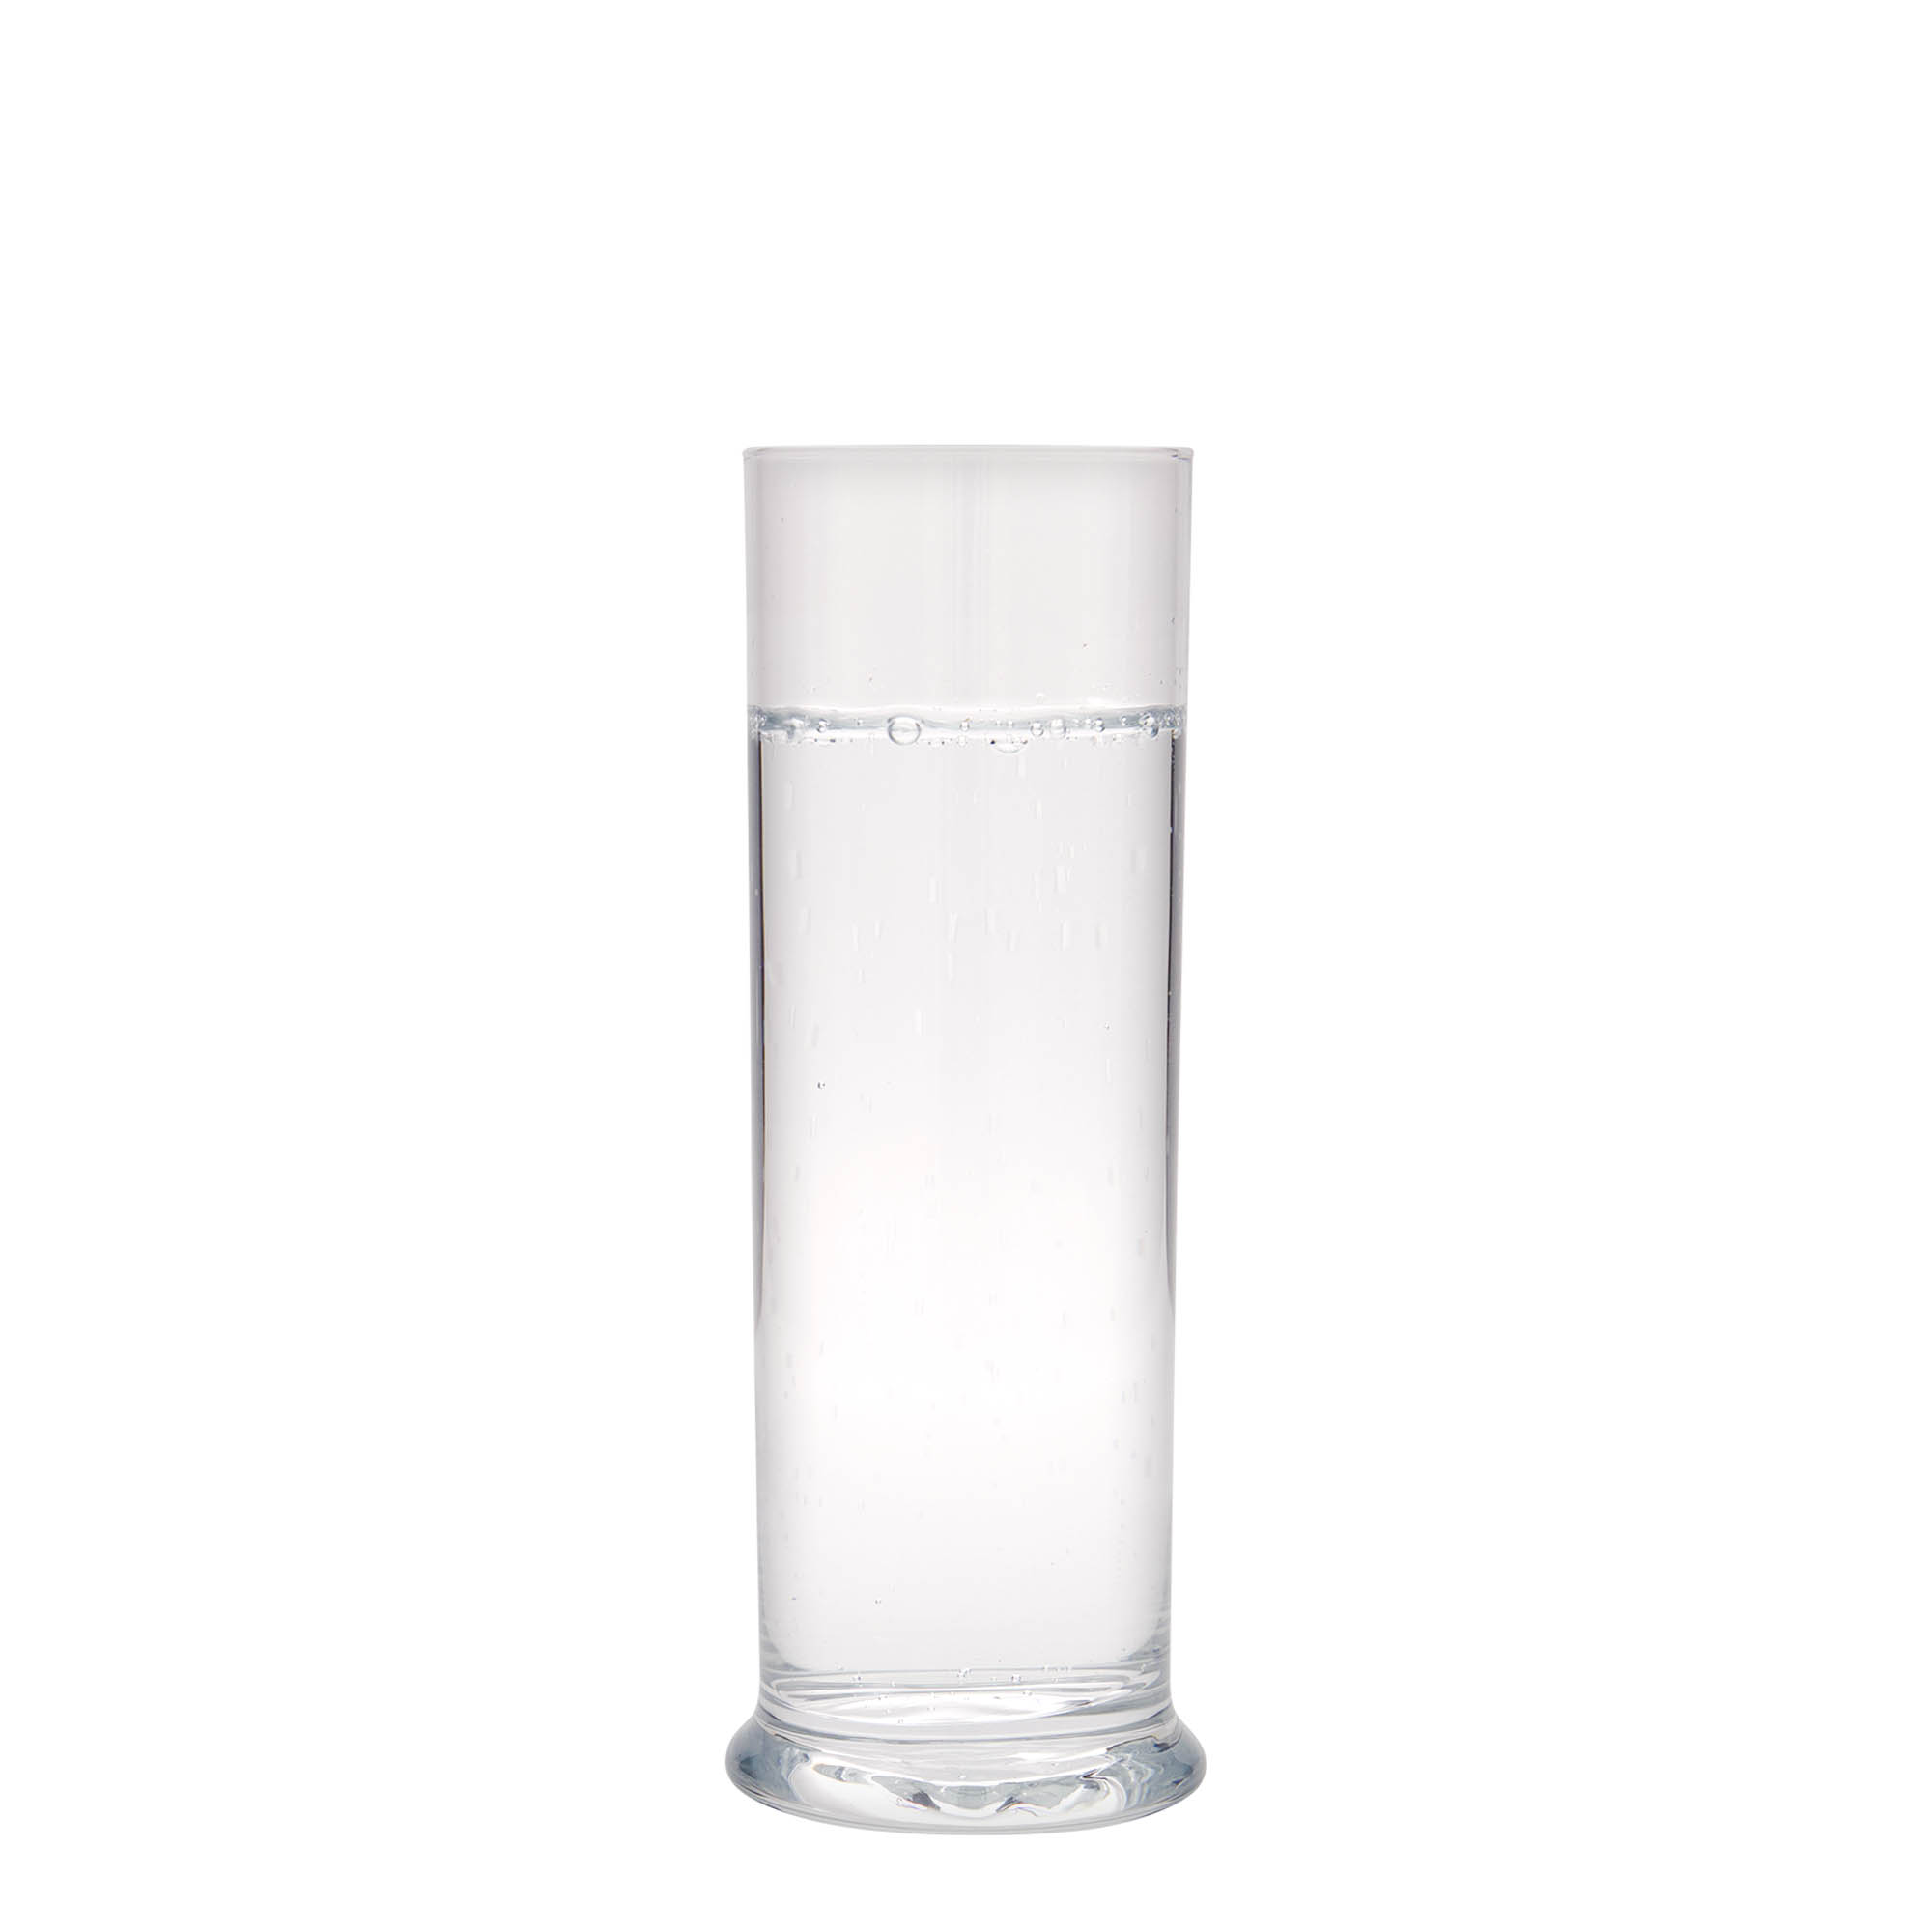 Longdrinkglas 'Club', 300 ml, glas